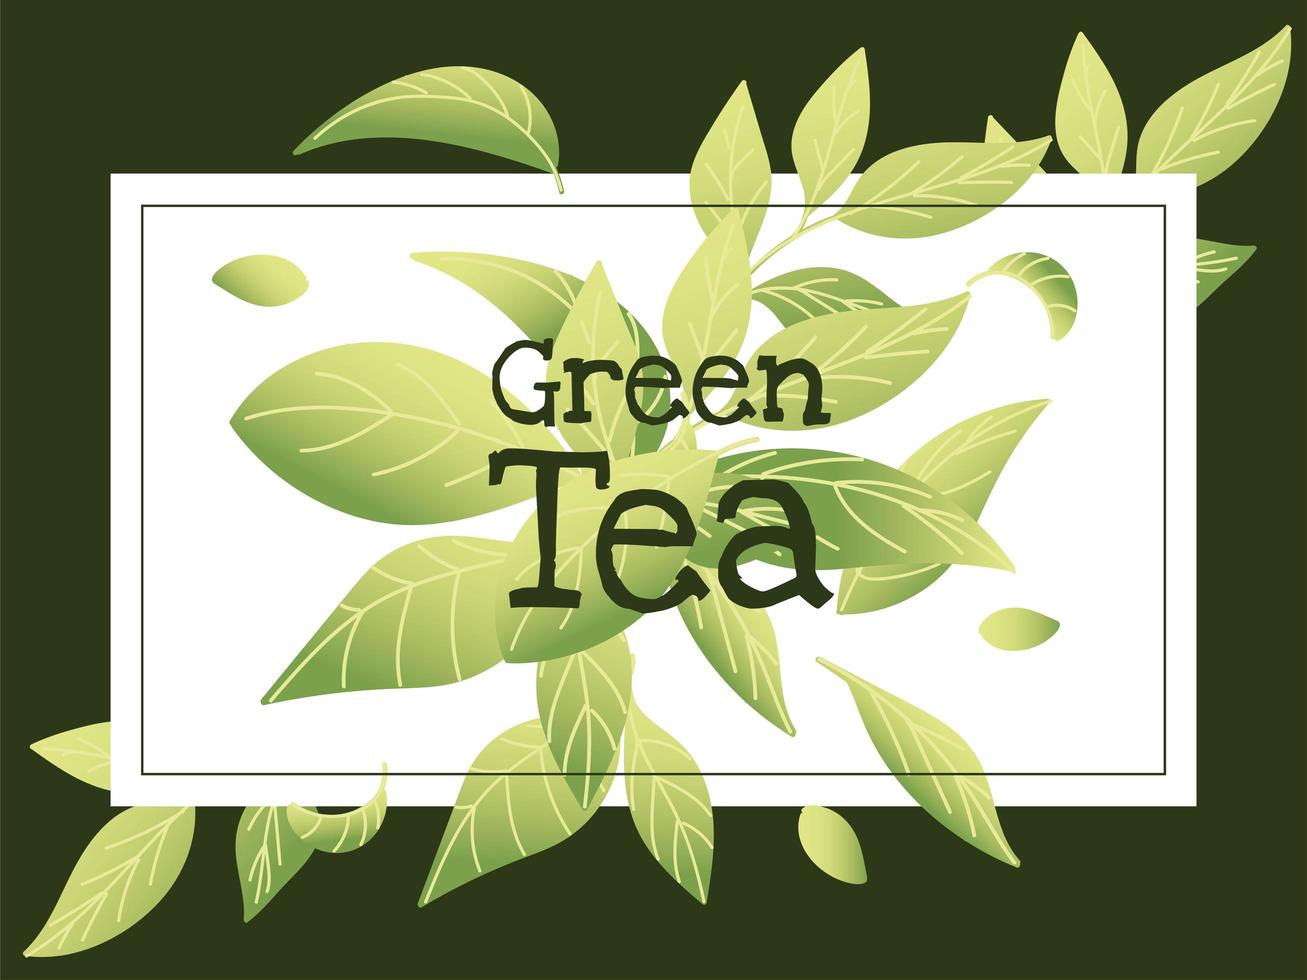 groene thee met bladeren in frame vector design